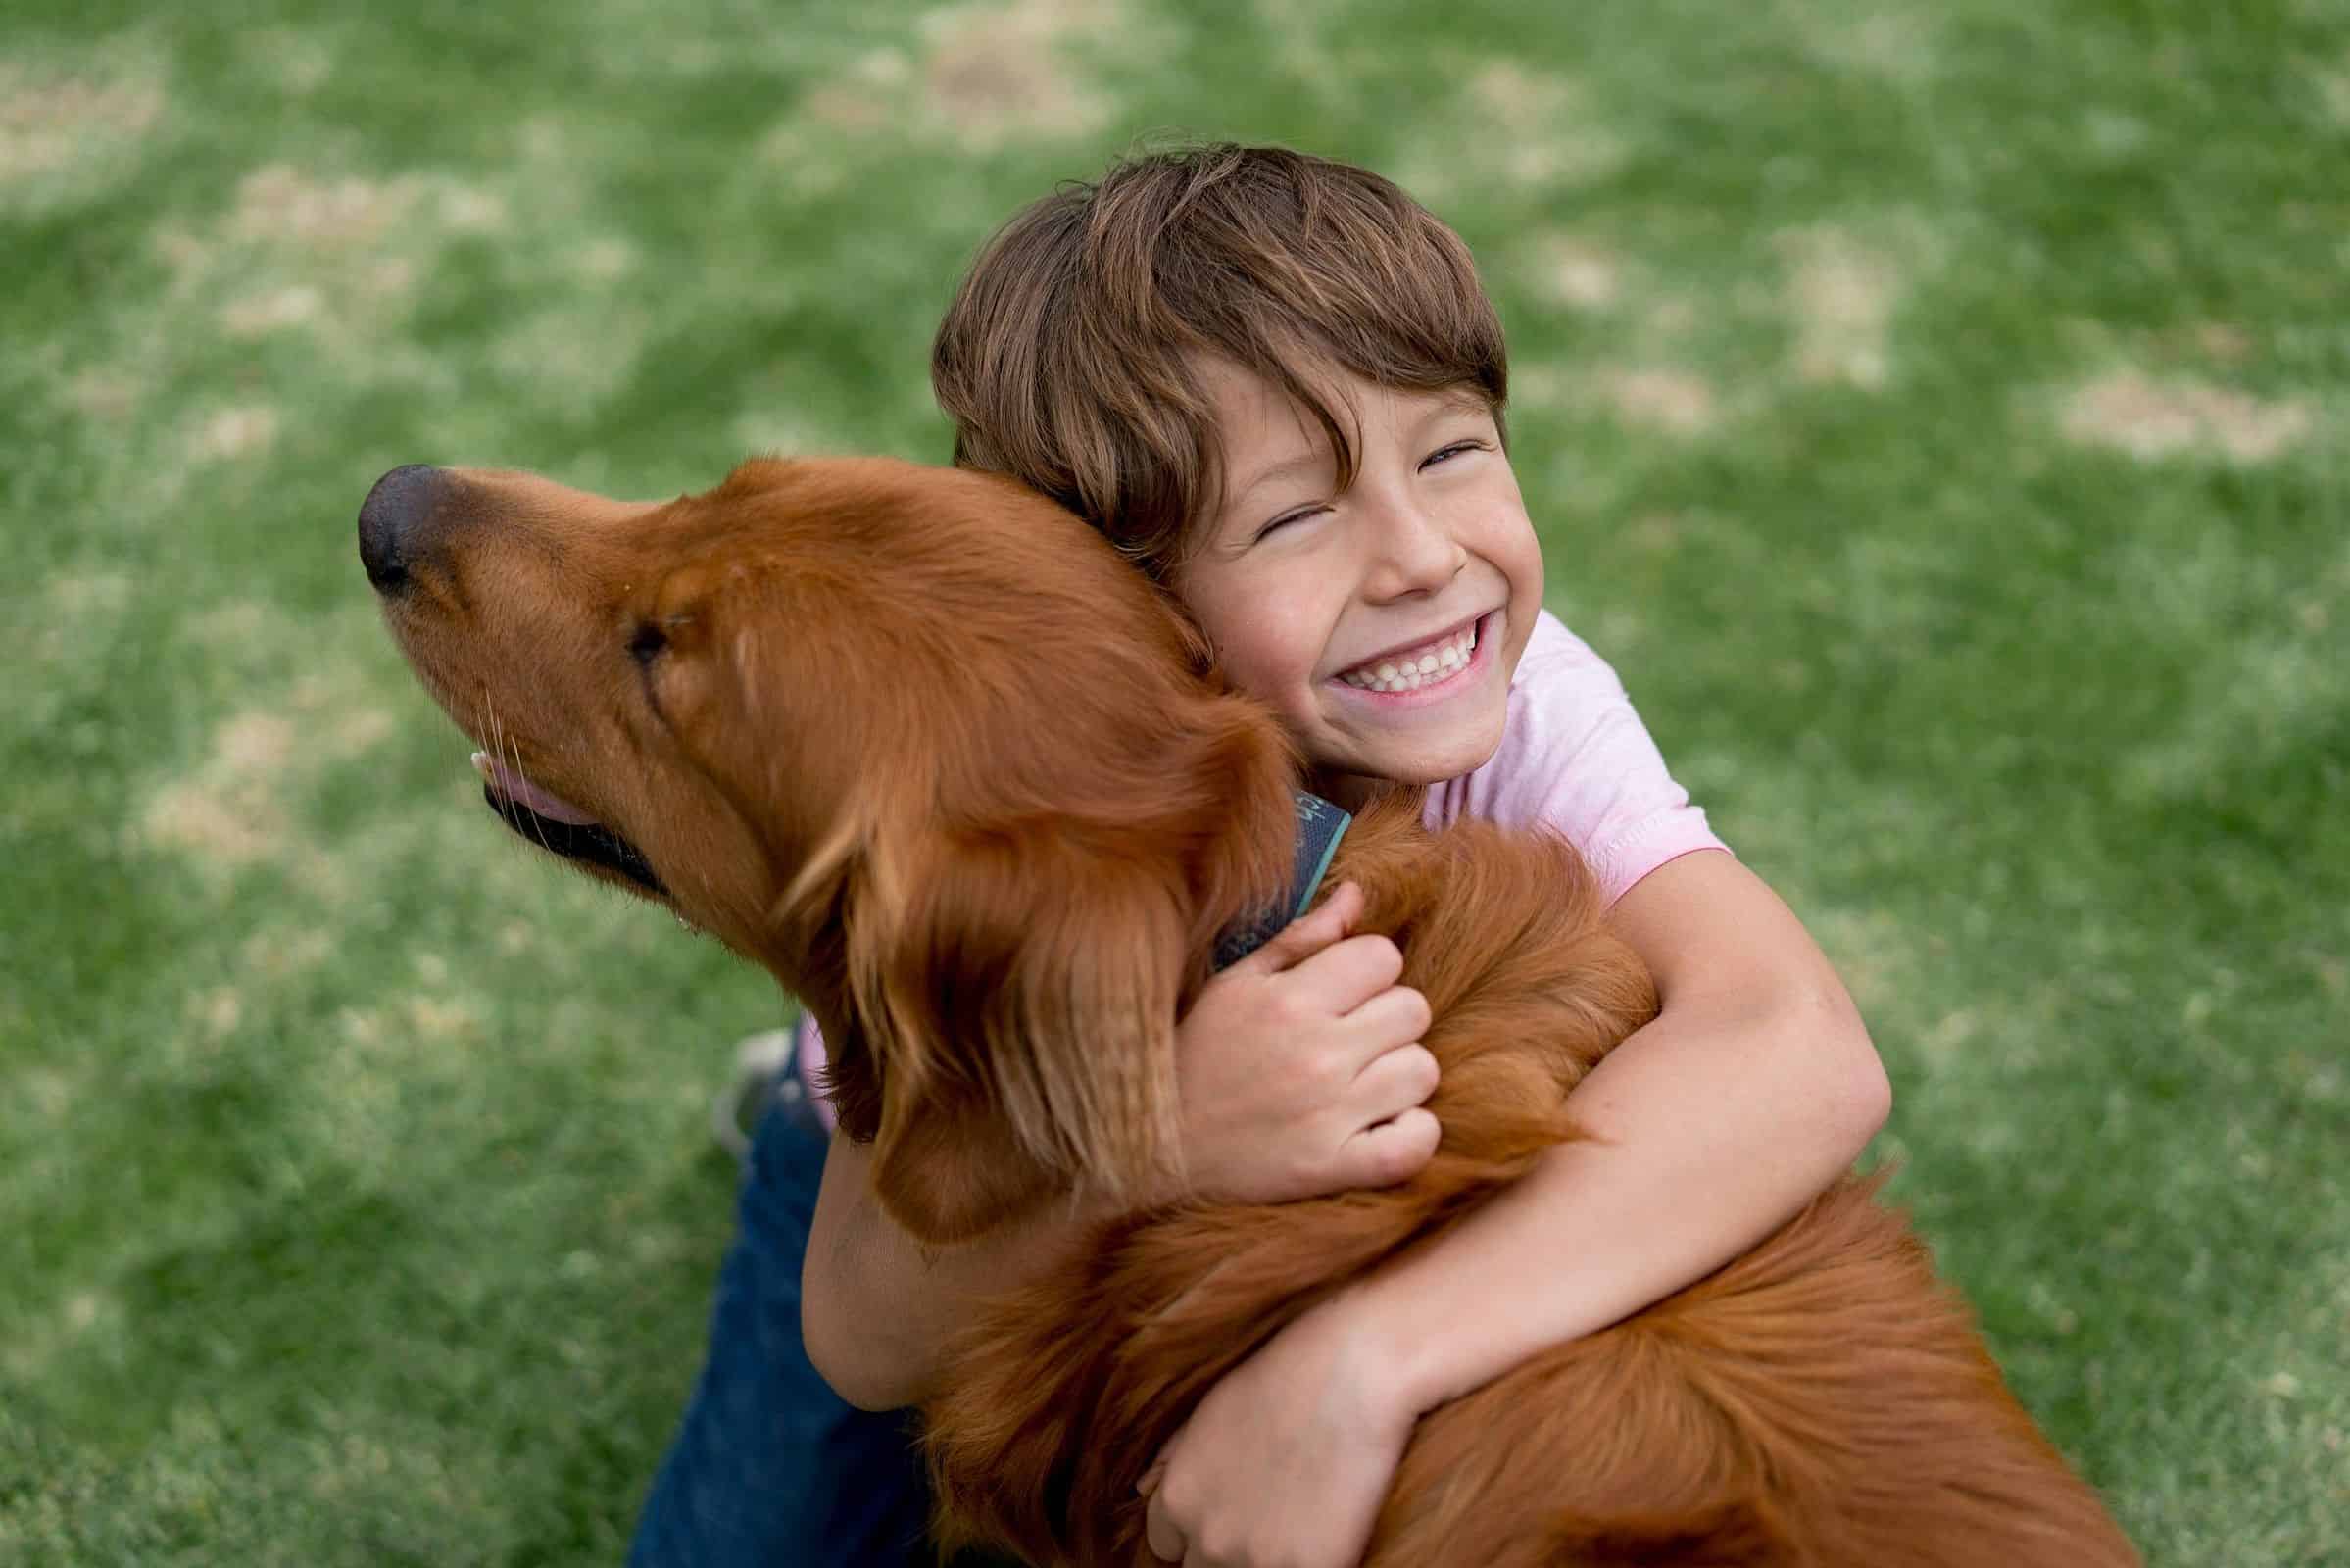 Imagem de uma criança abraçando um cachorro